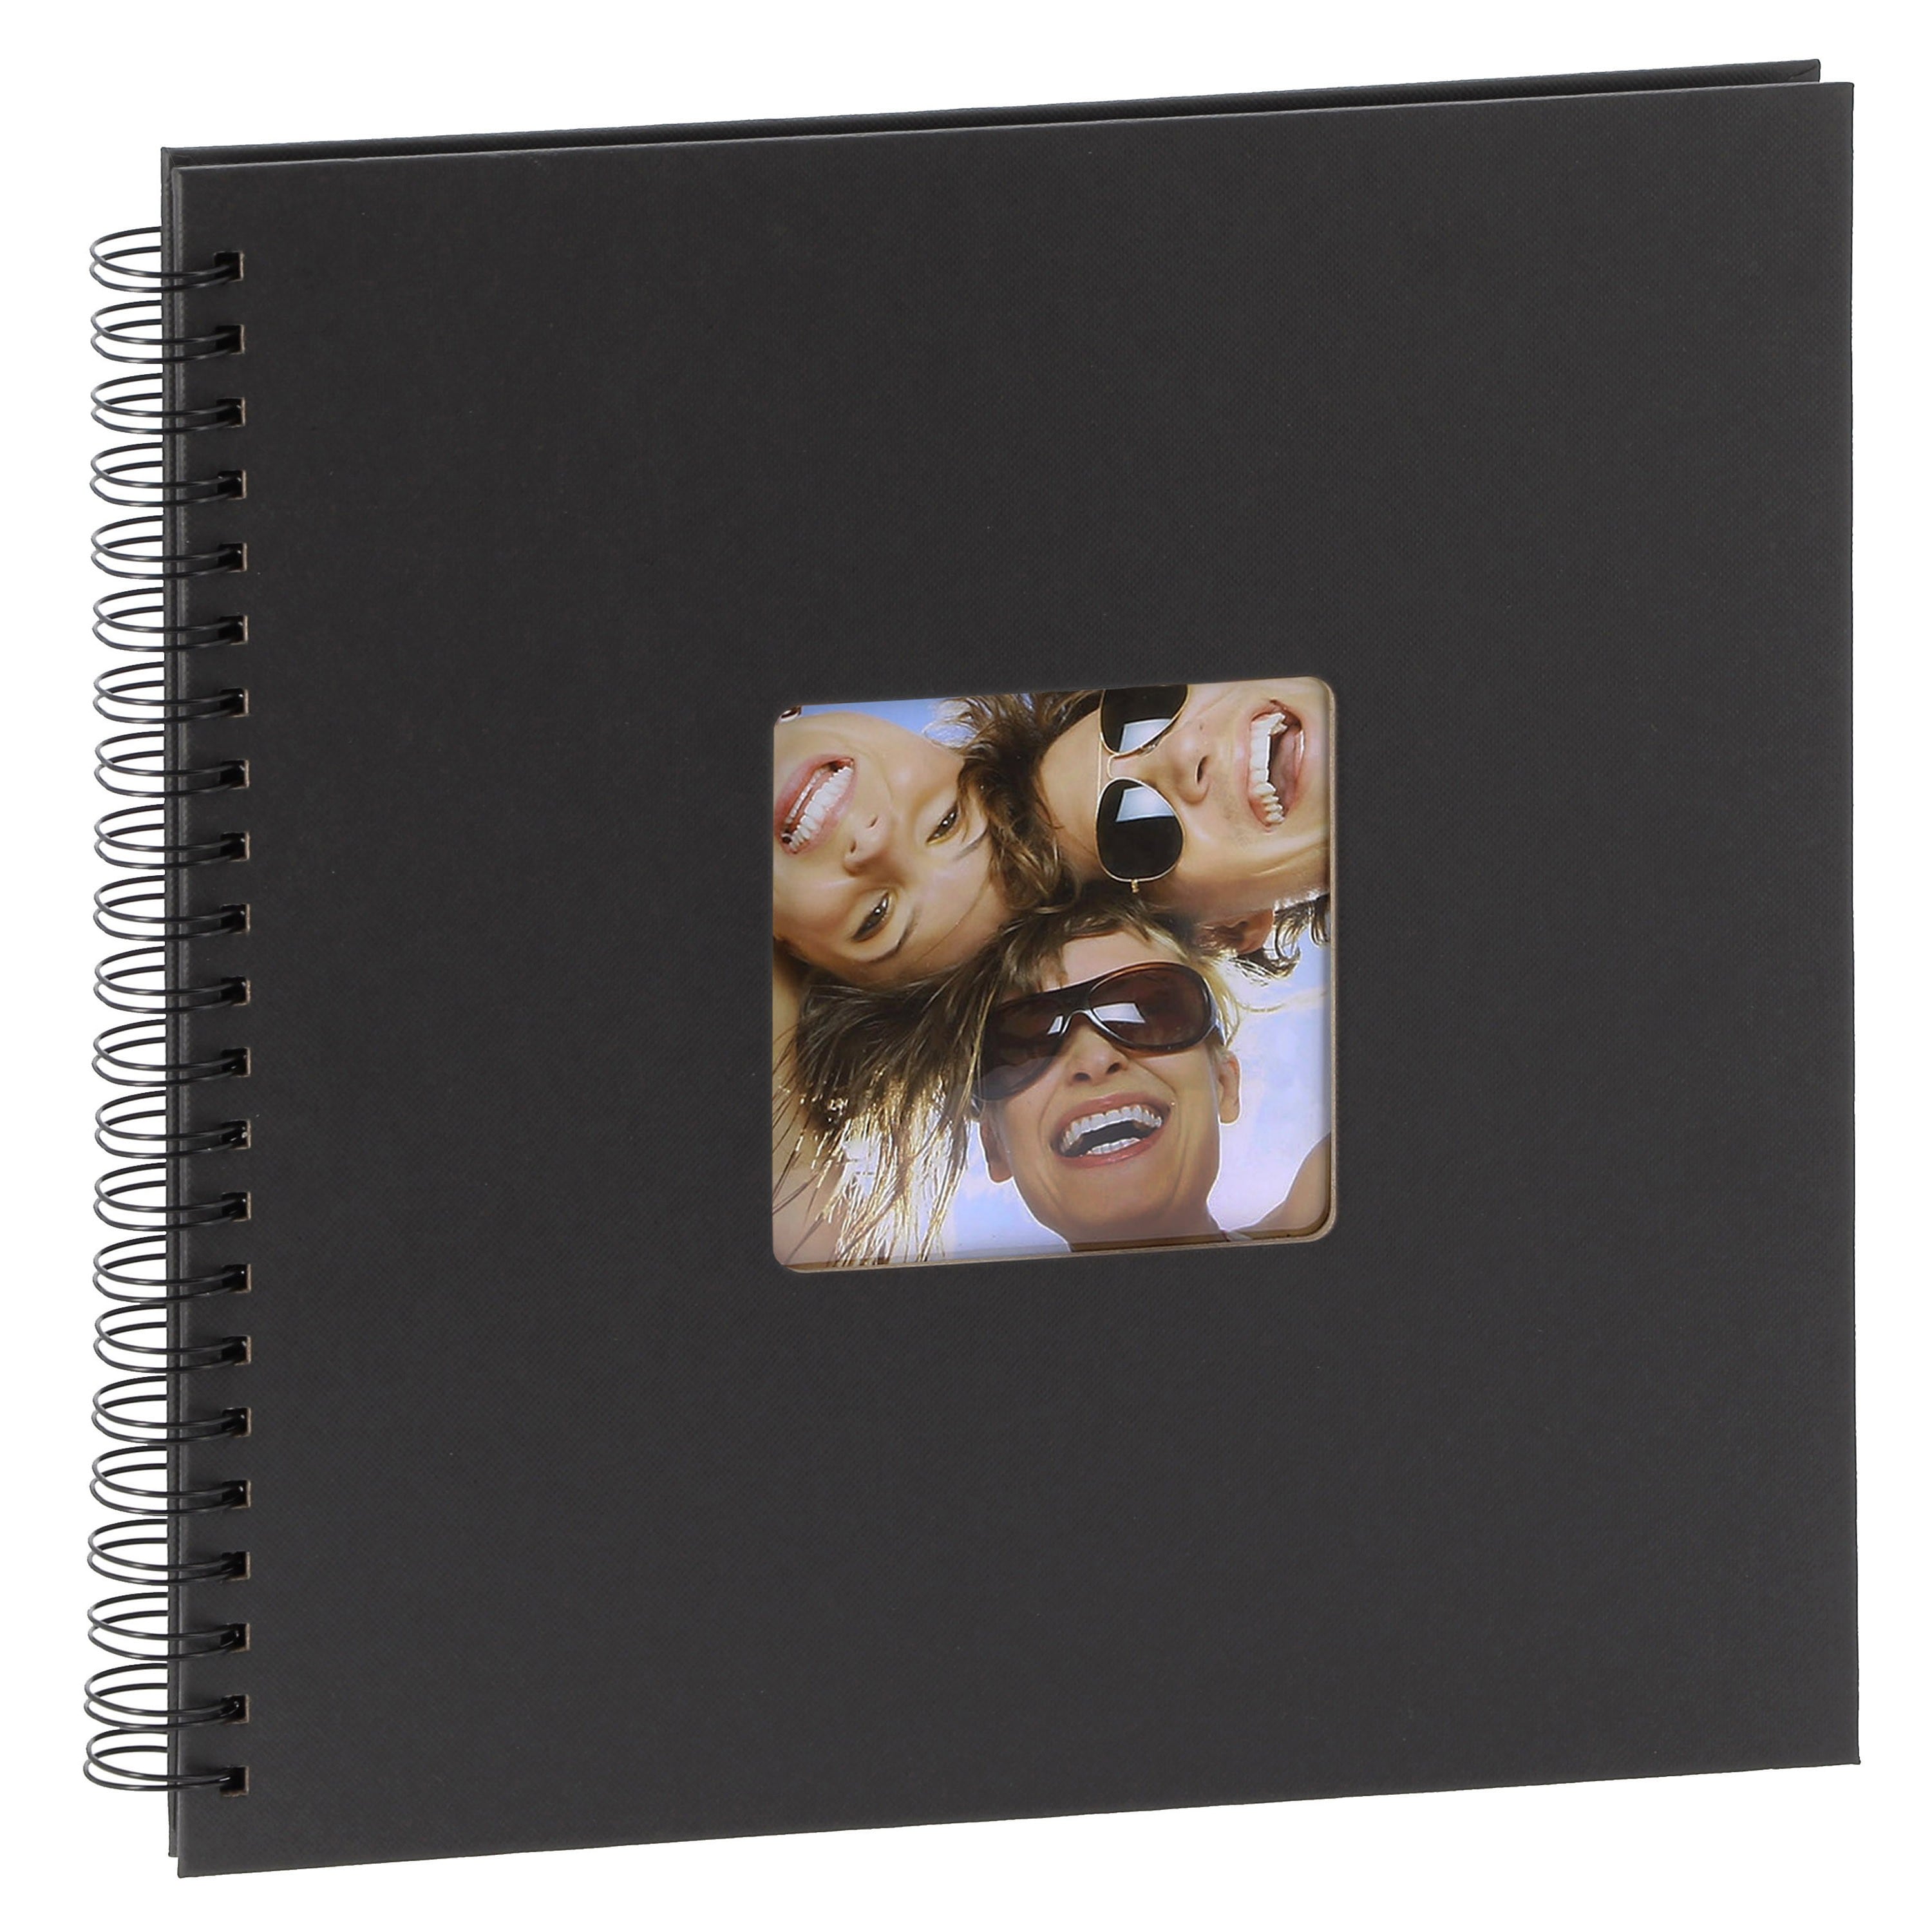 WALTHER DESIGN - Album photo traditionnel FUN - 50 pages noires - 200 photos - Couverture Noire 30x30cm + fenêtre